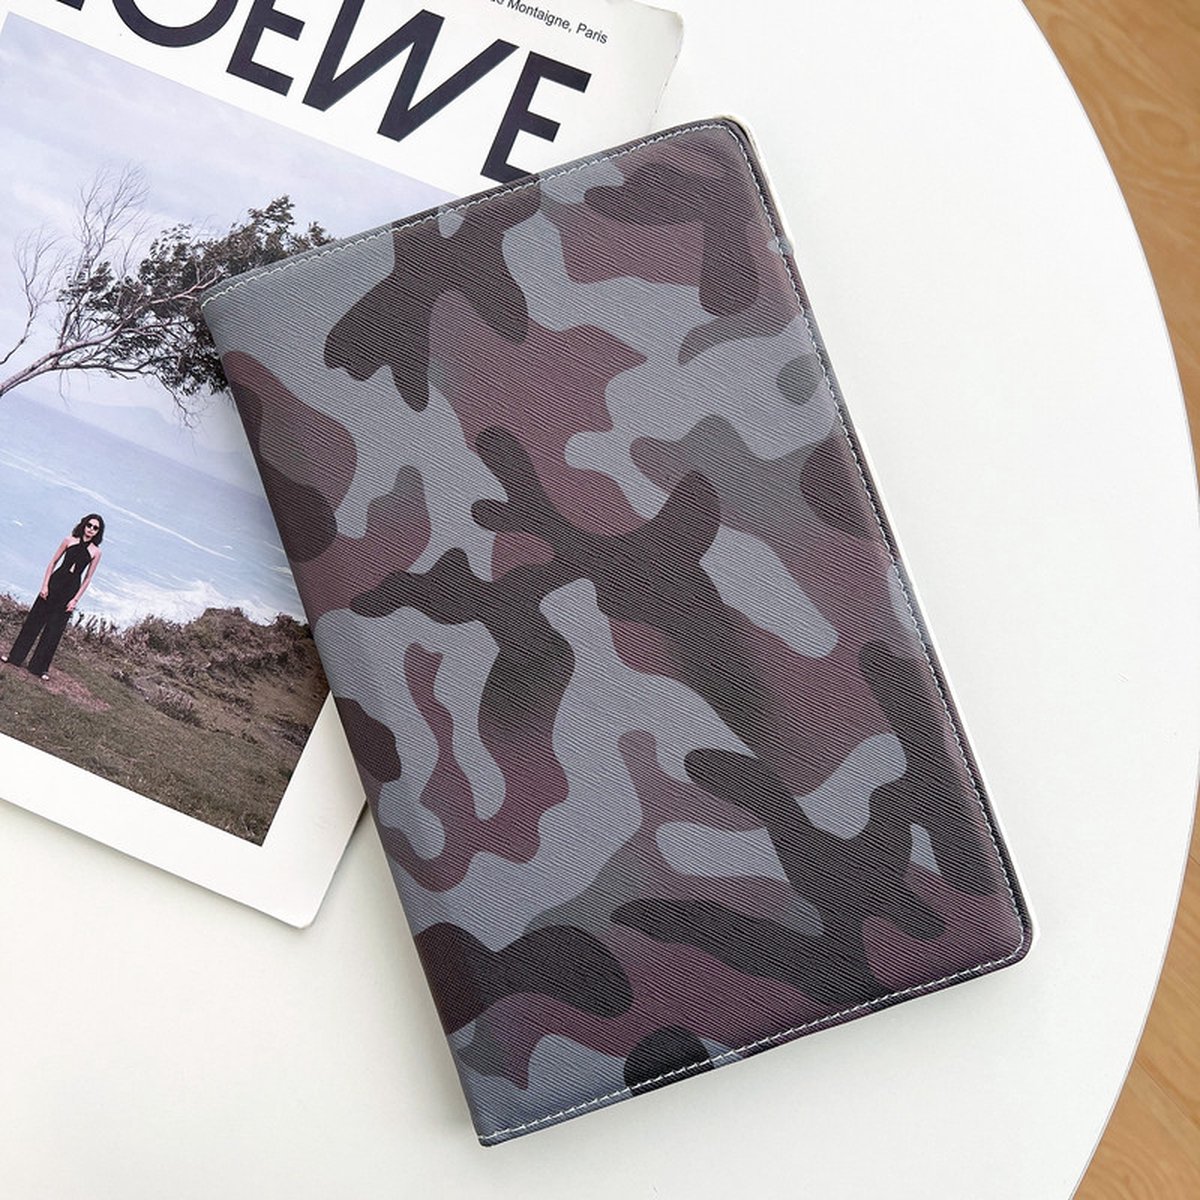 P.C.K. Boekhoesje/Bookcover/Case draaibaar hoesje bruin camouflage print geschikt voor Apple iPad 10.2 (2019/2021)